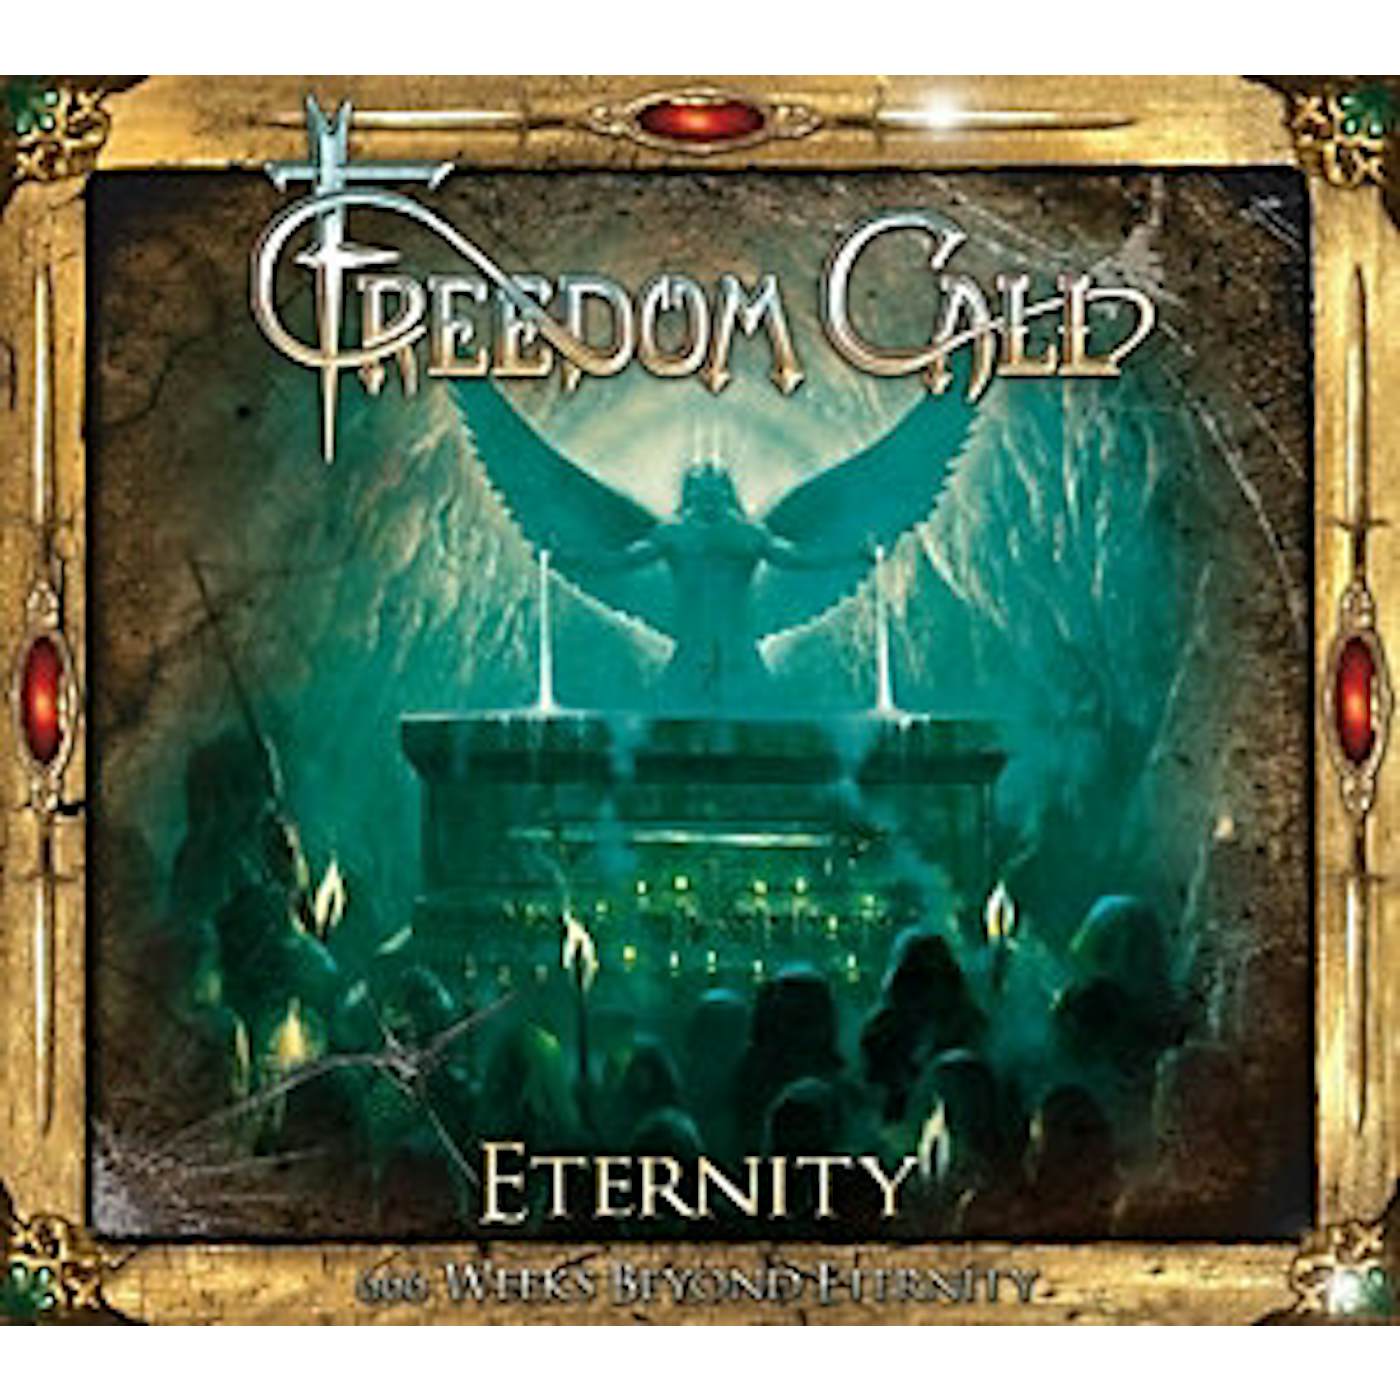 Freedom Call ETERNITY - 666 WEEKS BEYOND ETERNITY CD